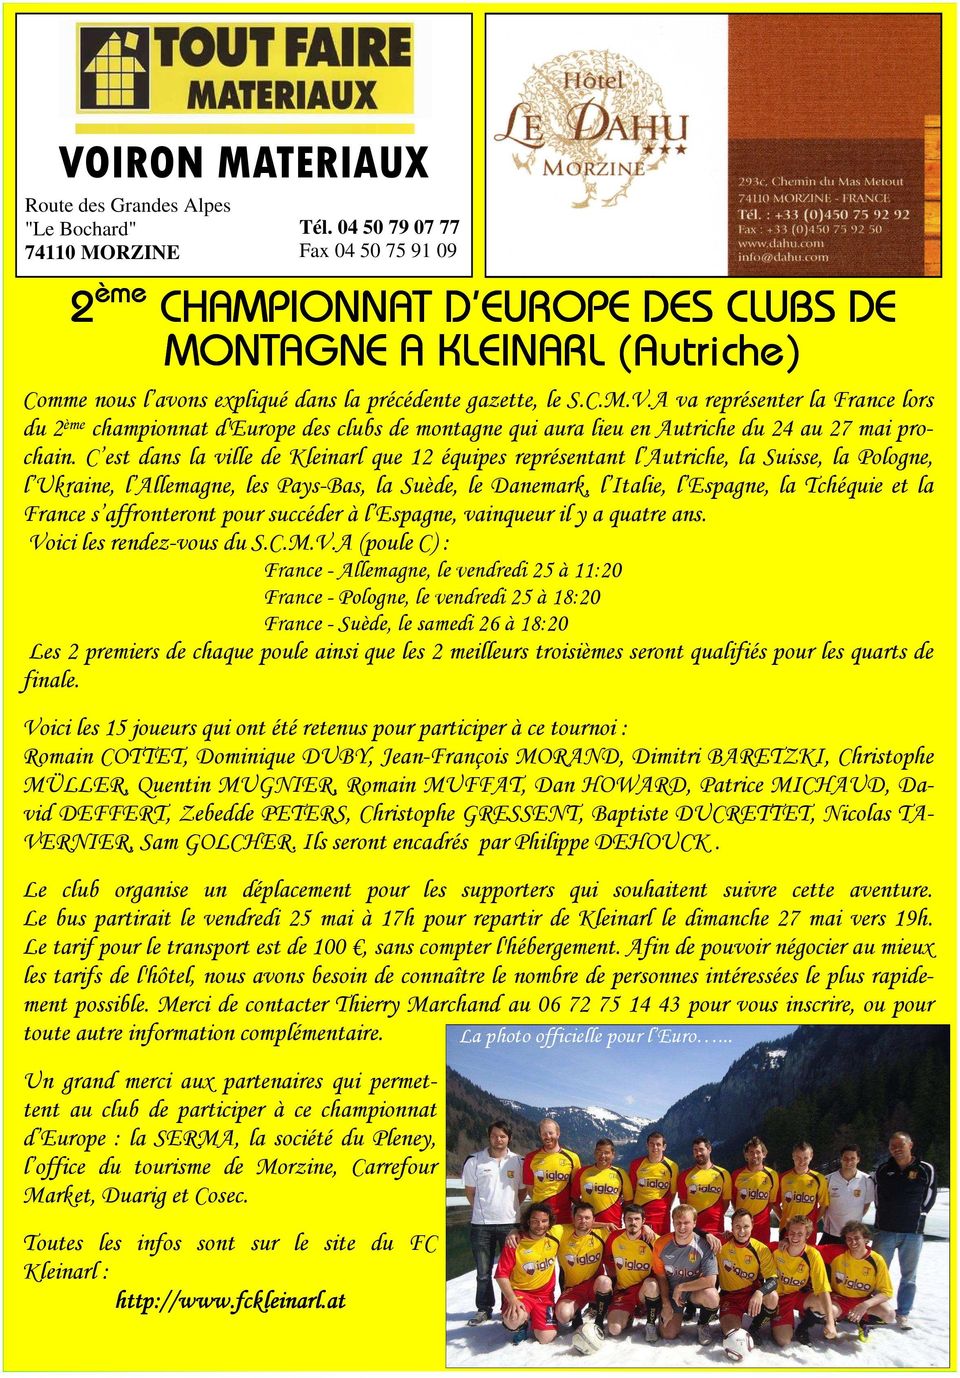 A va représenter la France lors du 2ème championnat d'europe des clubs de montagne qui aura lieu en Autriche du 24 au 27 mai prochain.